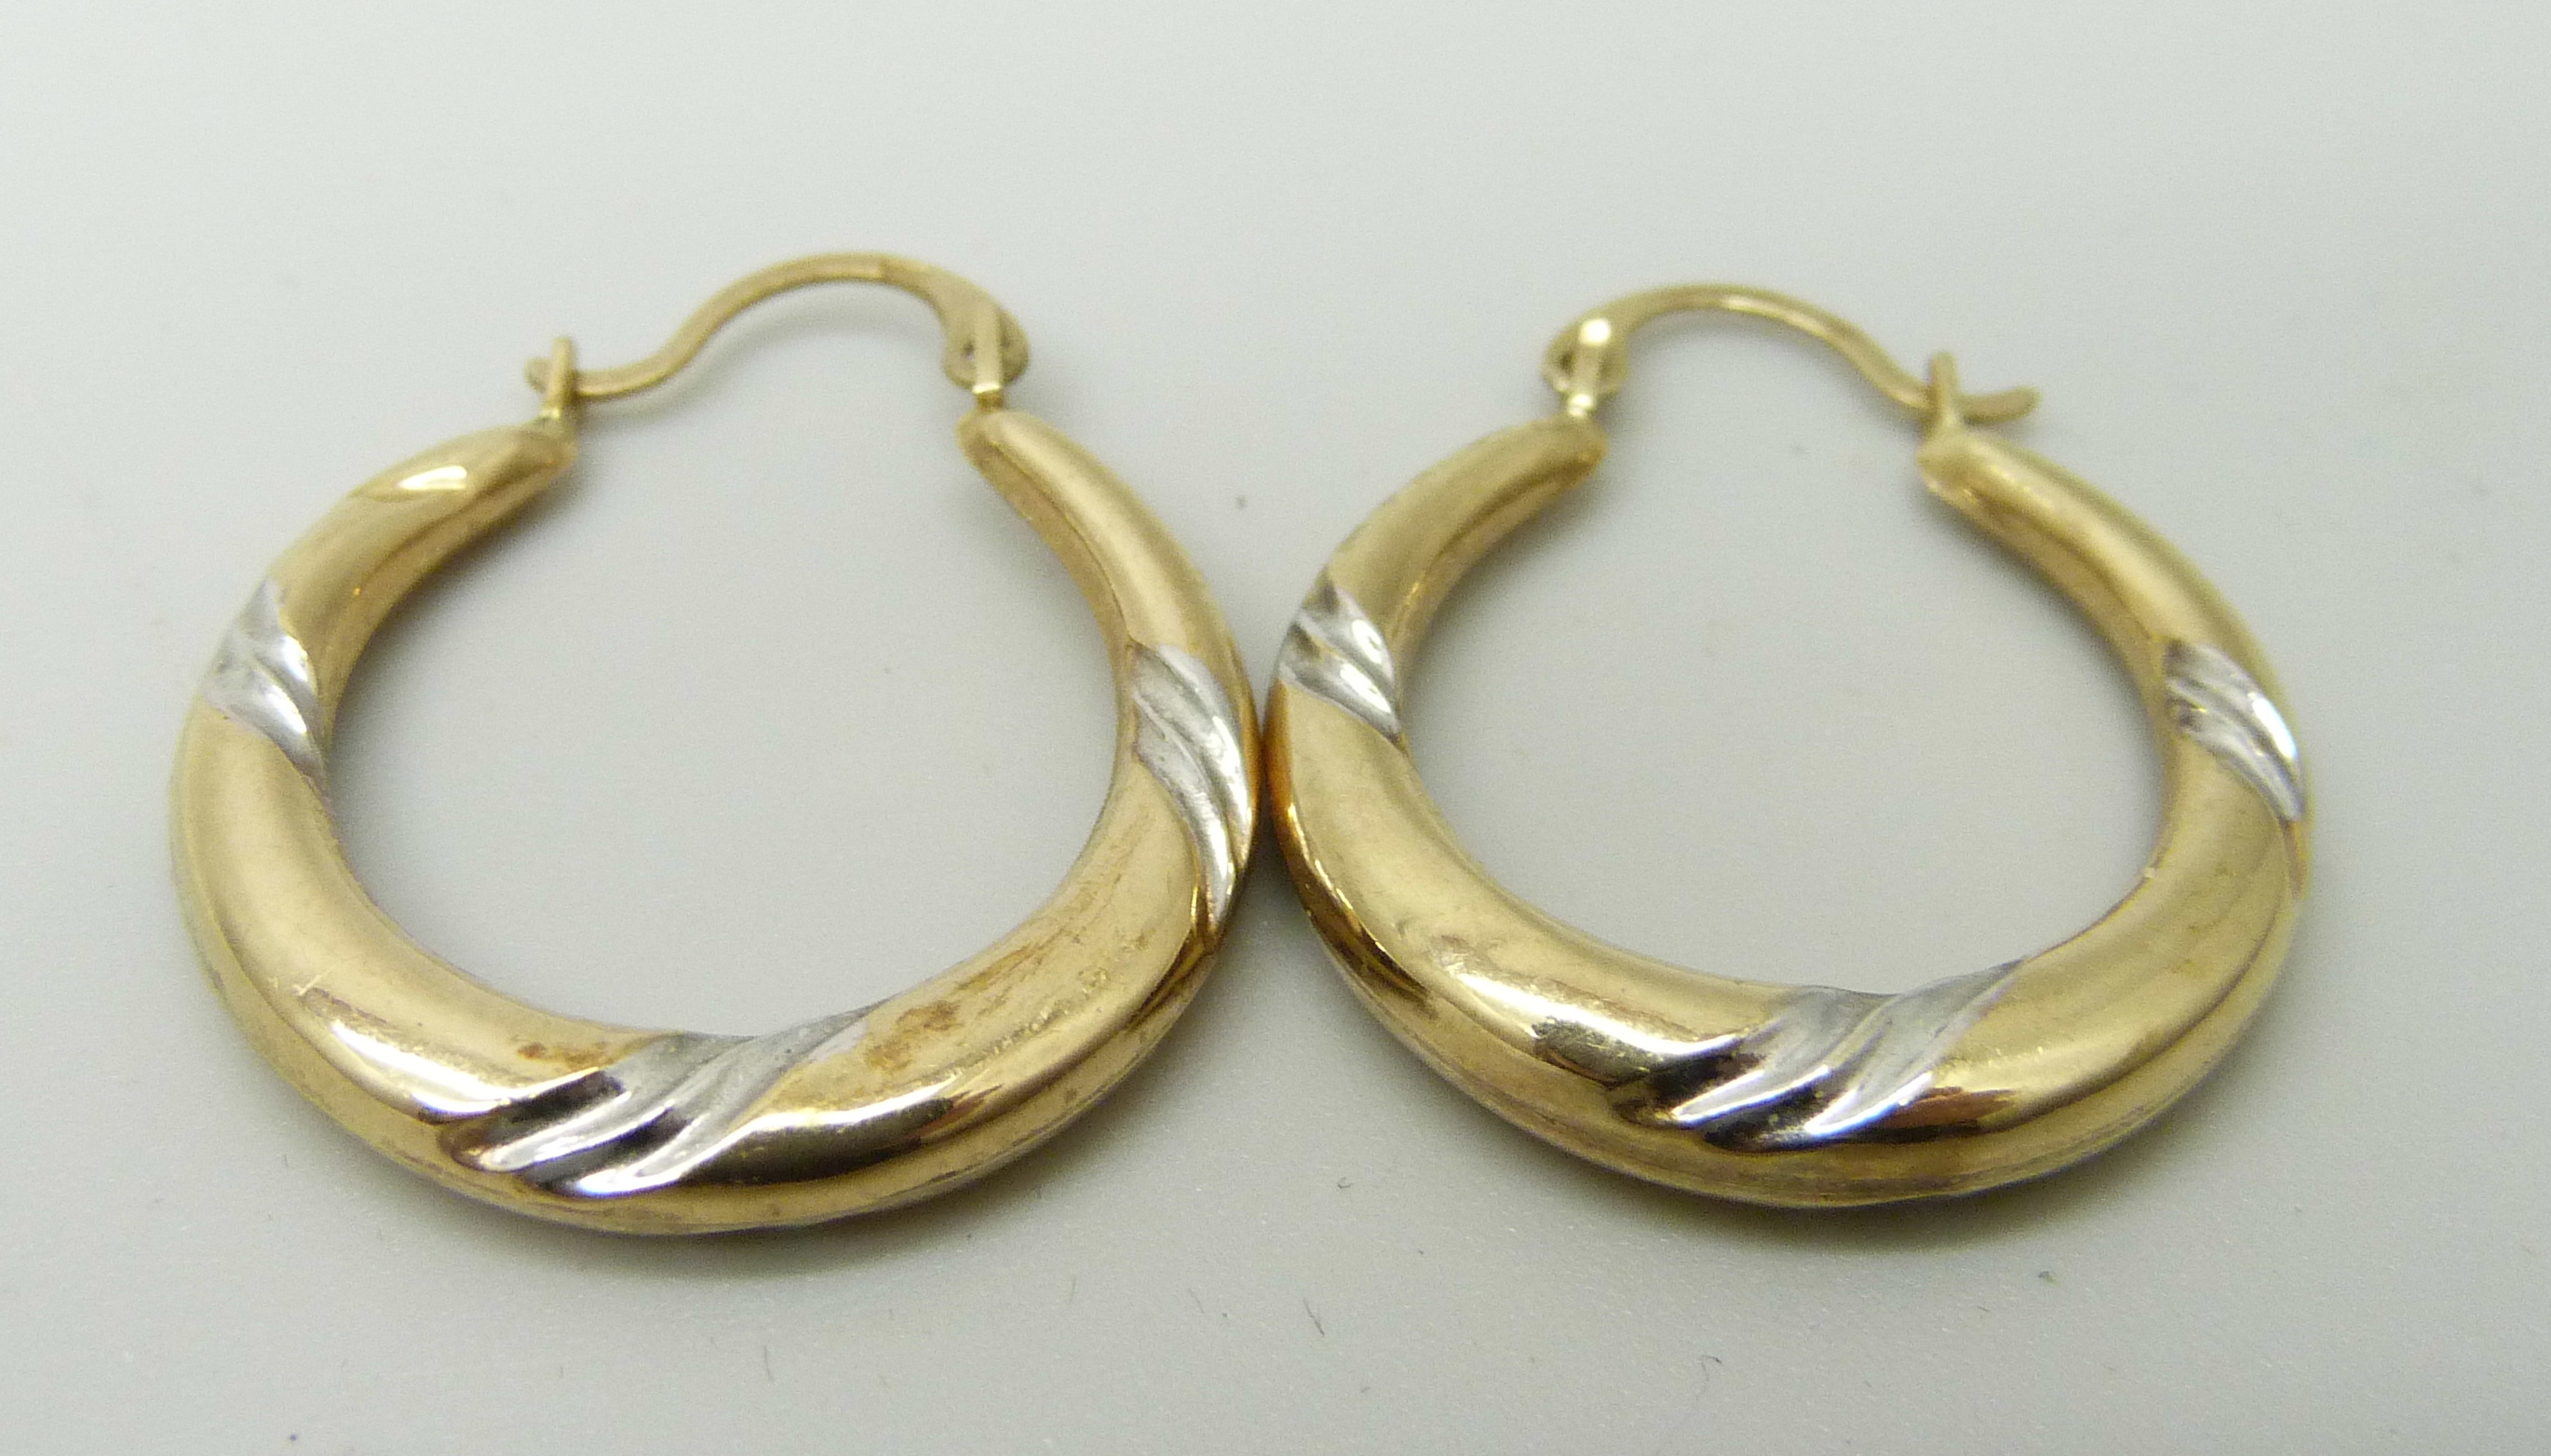 A pair of 9ct gold hoop earrings, 1g